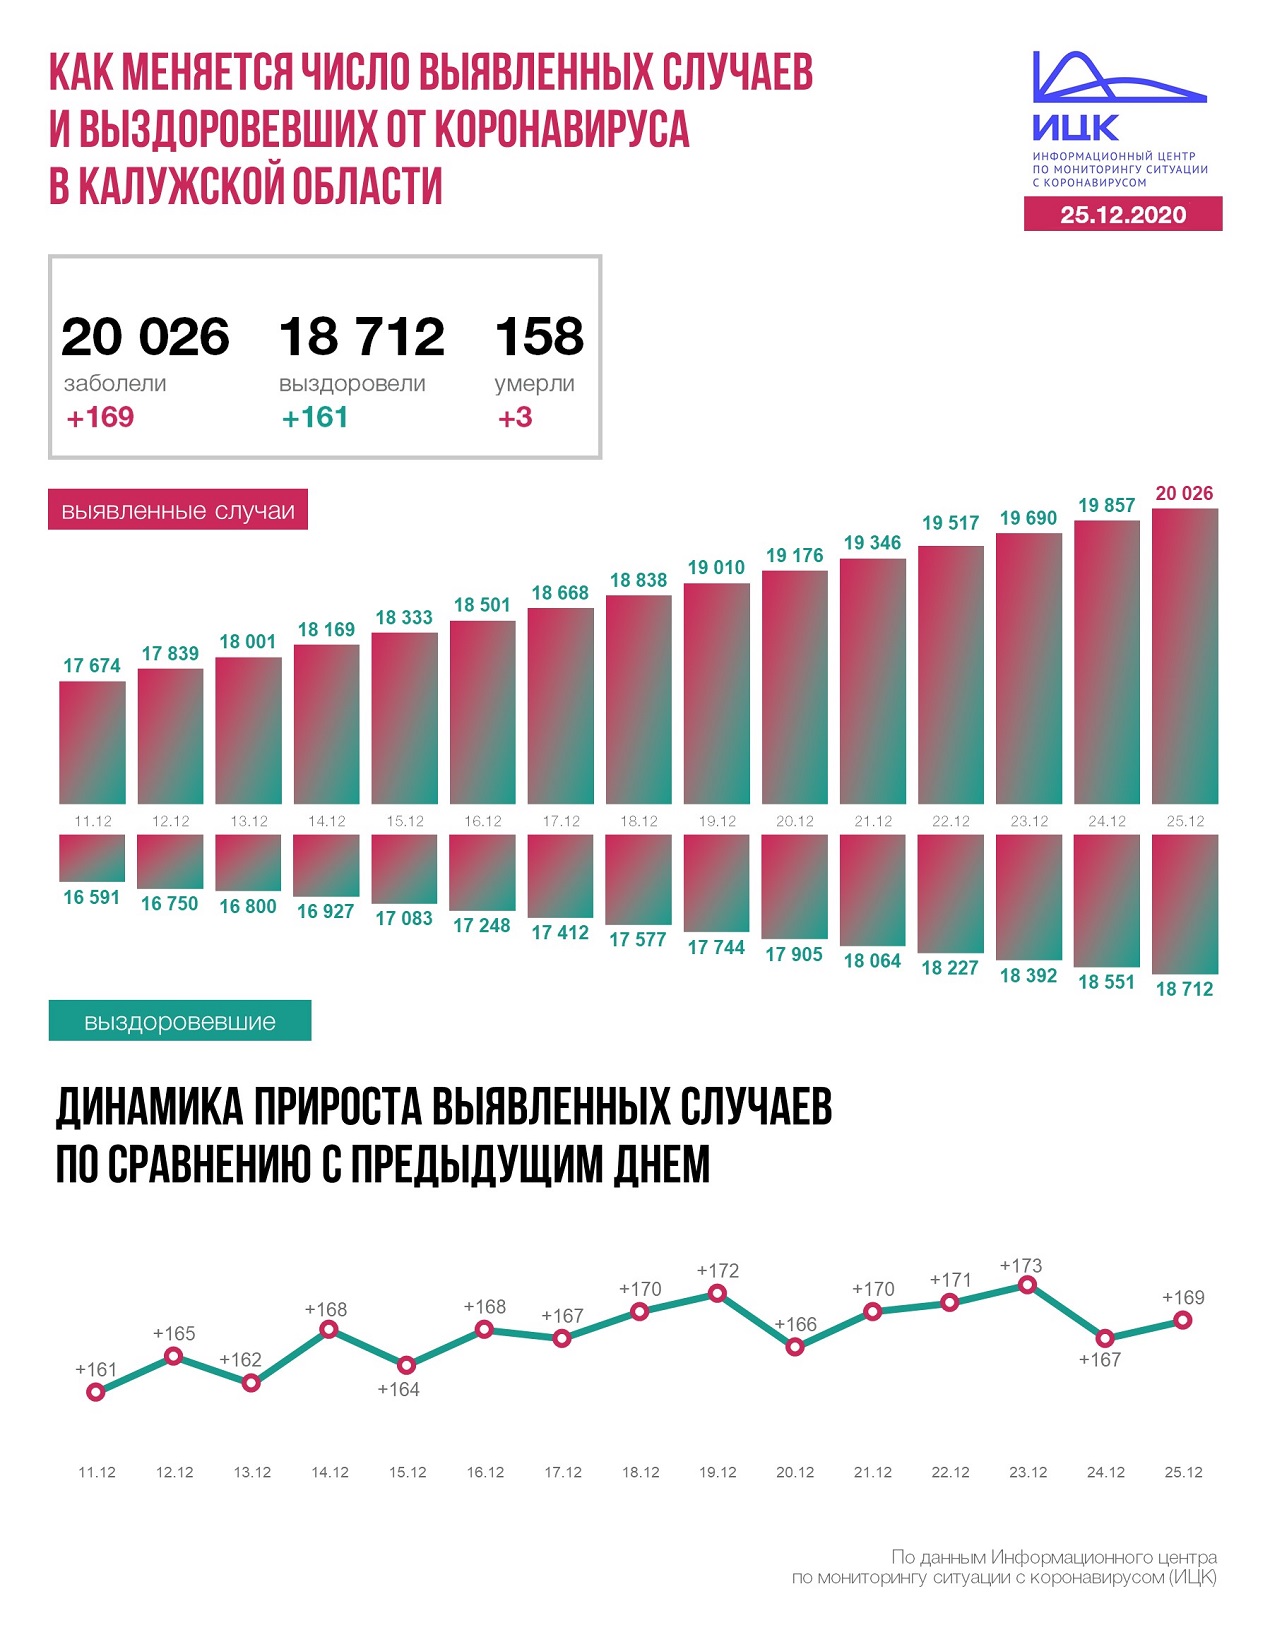 Официальная статистика по коронавирусу в Калужской области на 25 декабря 2020 года.